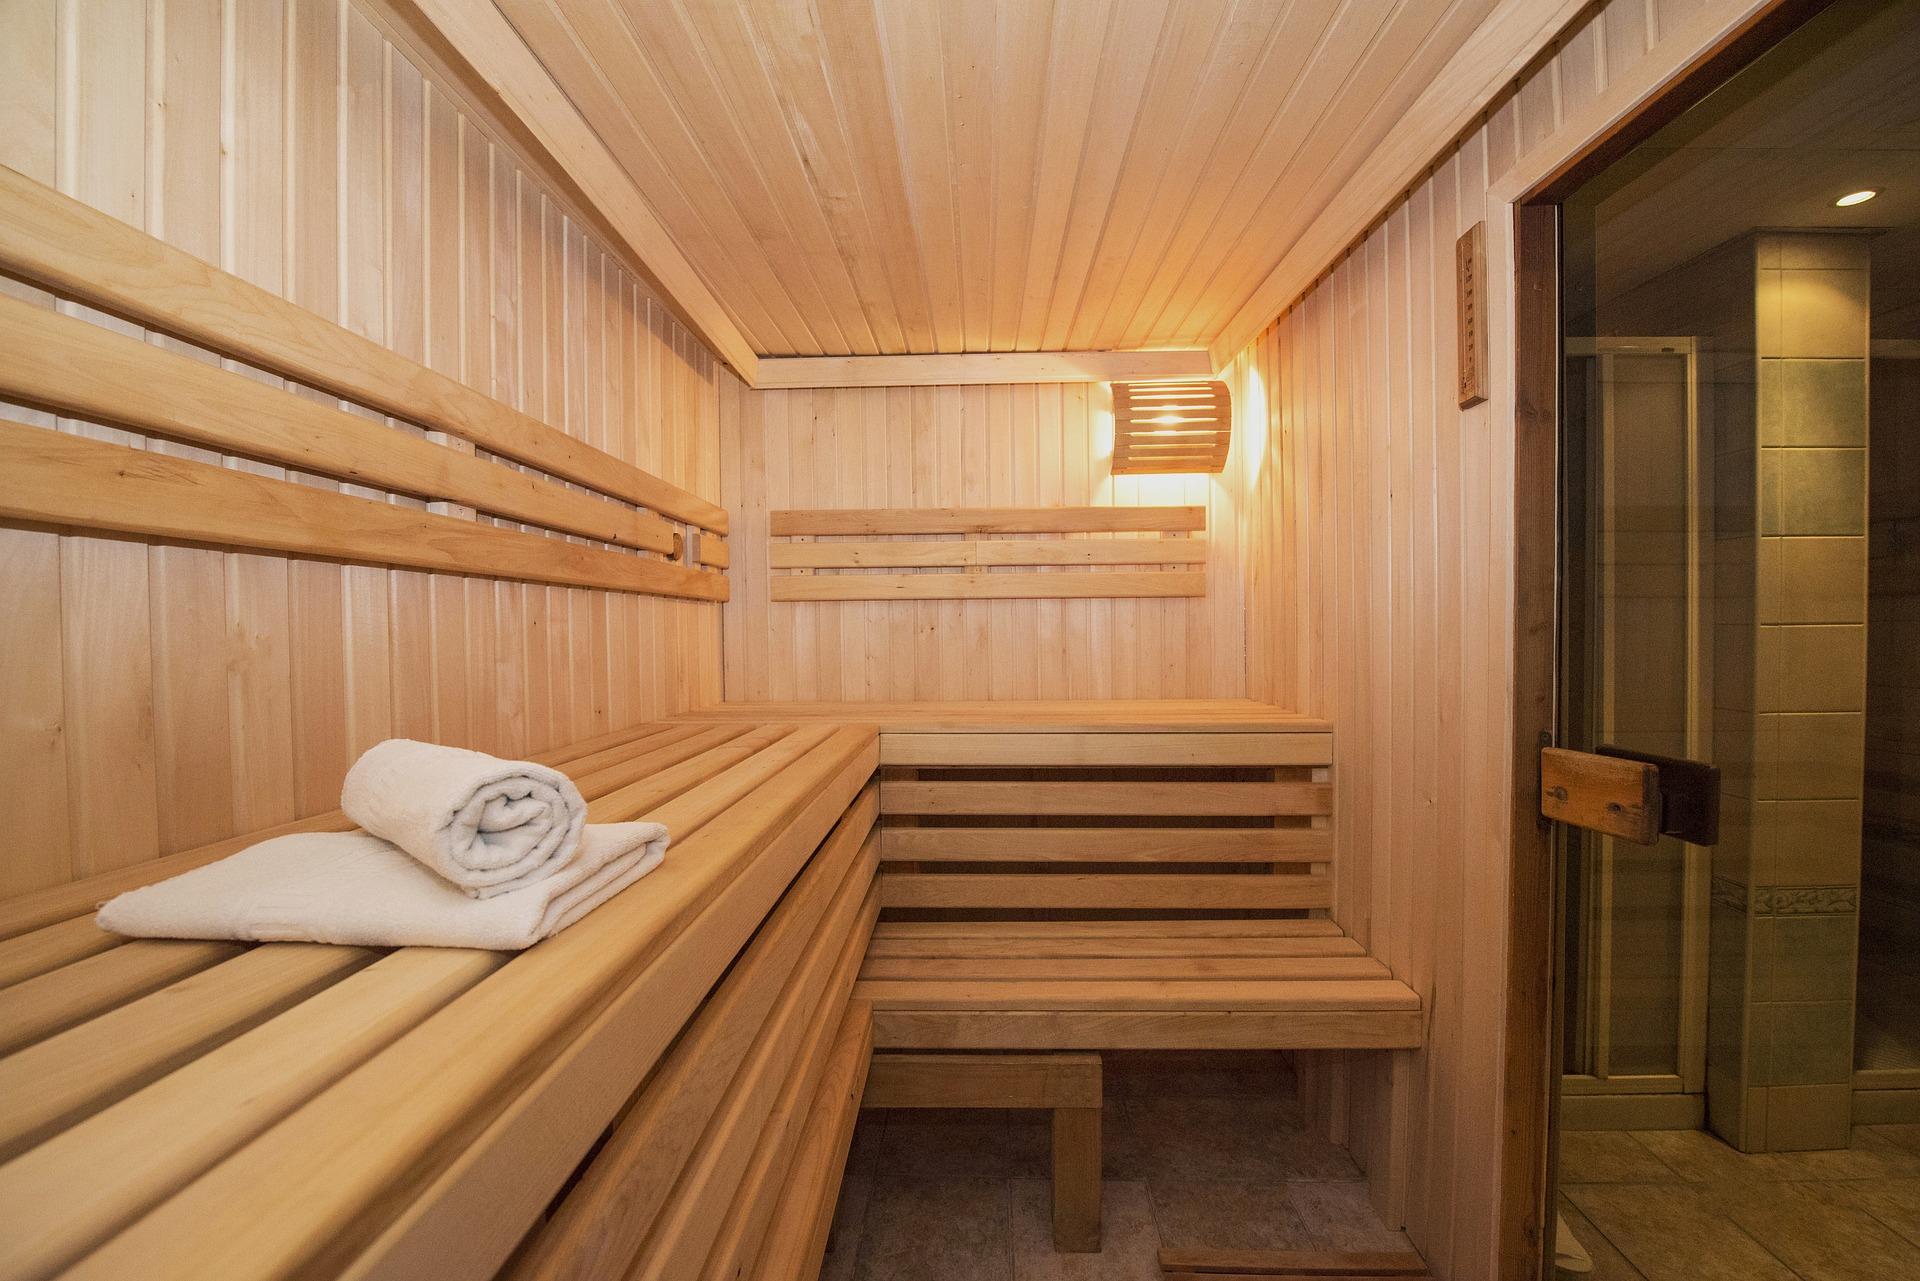 Hoe kun je goedkoop de sauna? DIK.NL